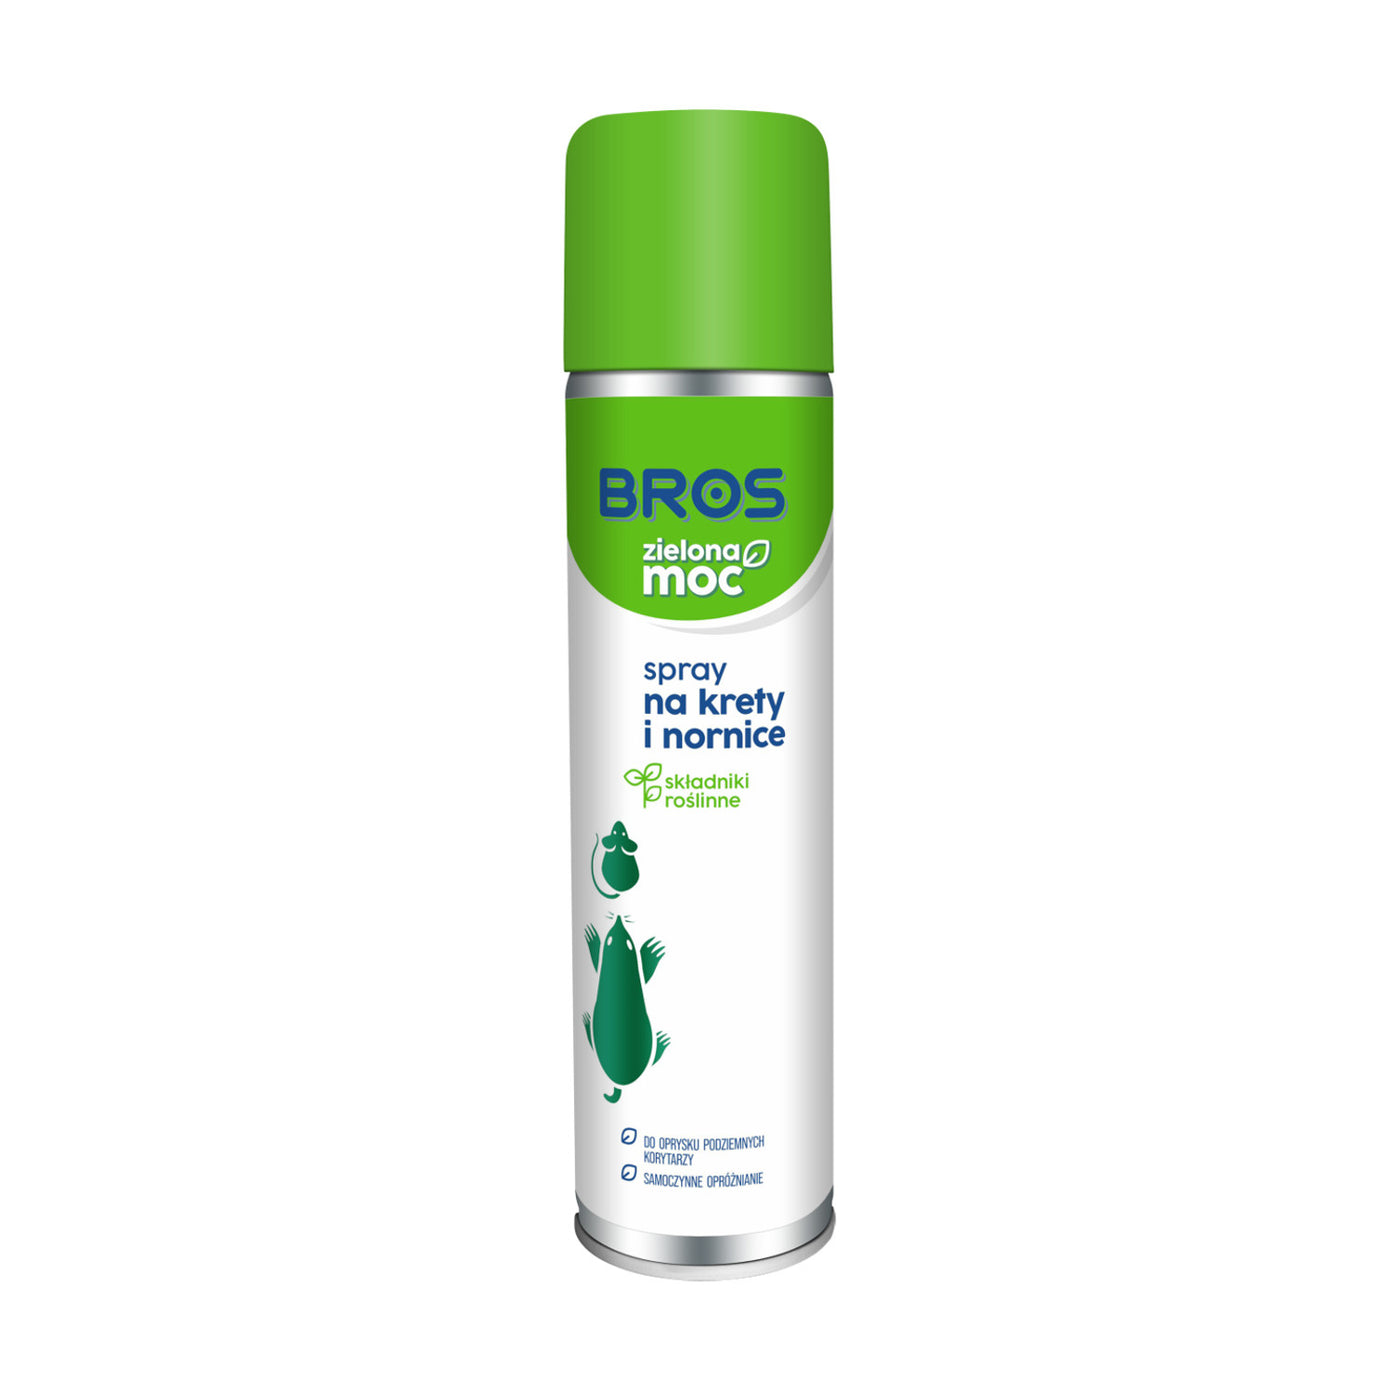 Bros Zielona Moc Spray na krety i nornice 400 ml, długotrwałe działanie